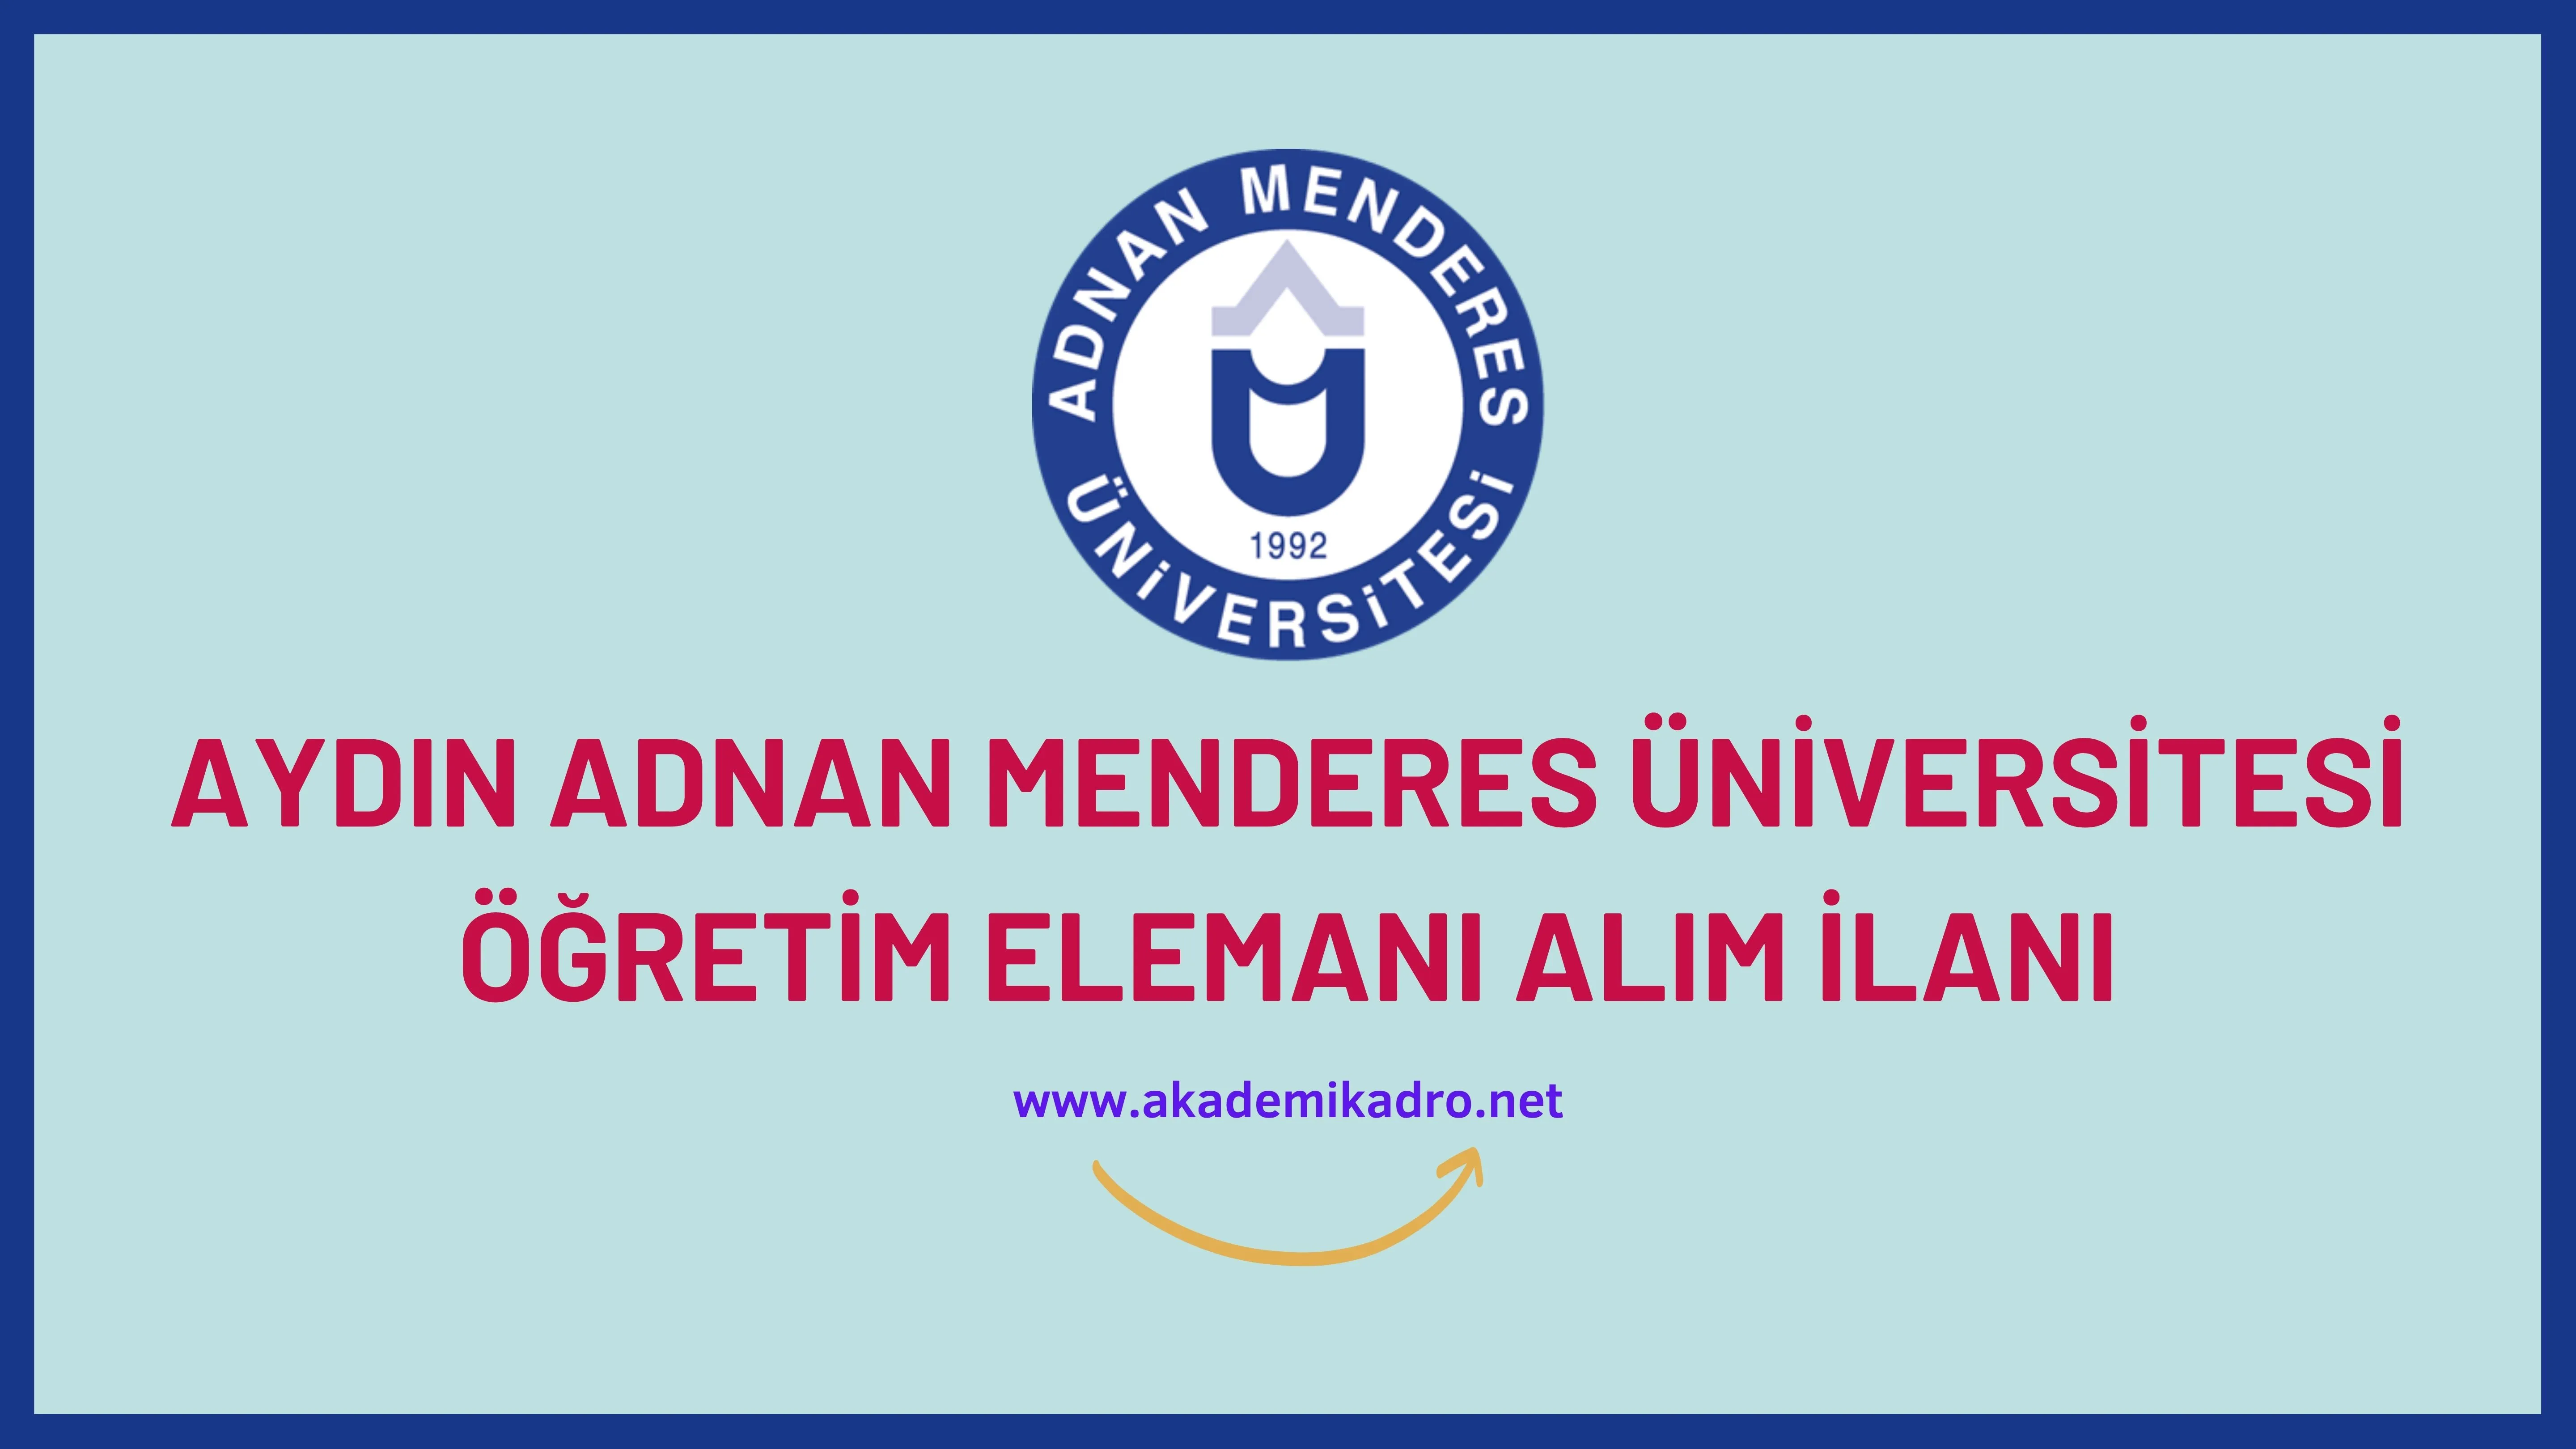 Aydın Adnan Menderes Üniversitesi 20 Öğretim görevlisi ve 52 Öğretim üyesi alacak.